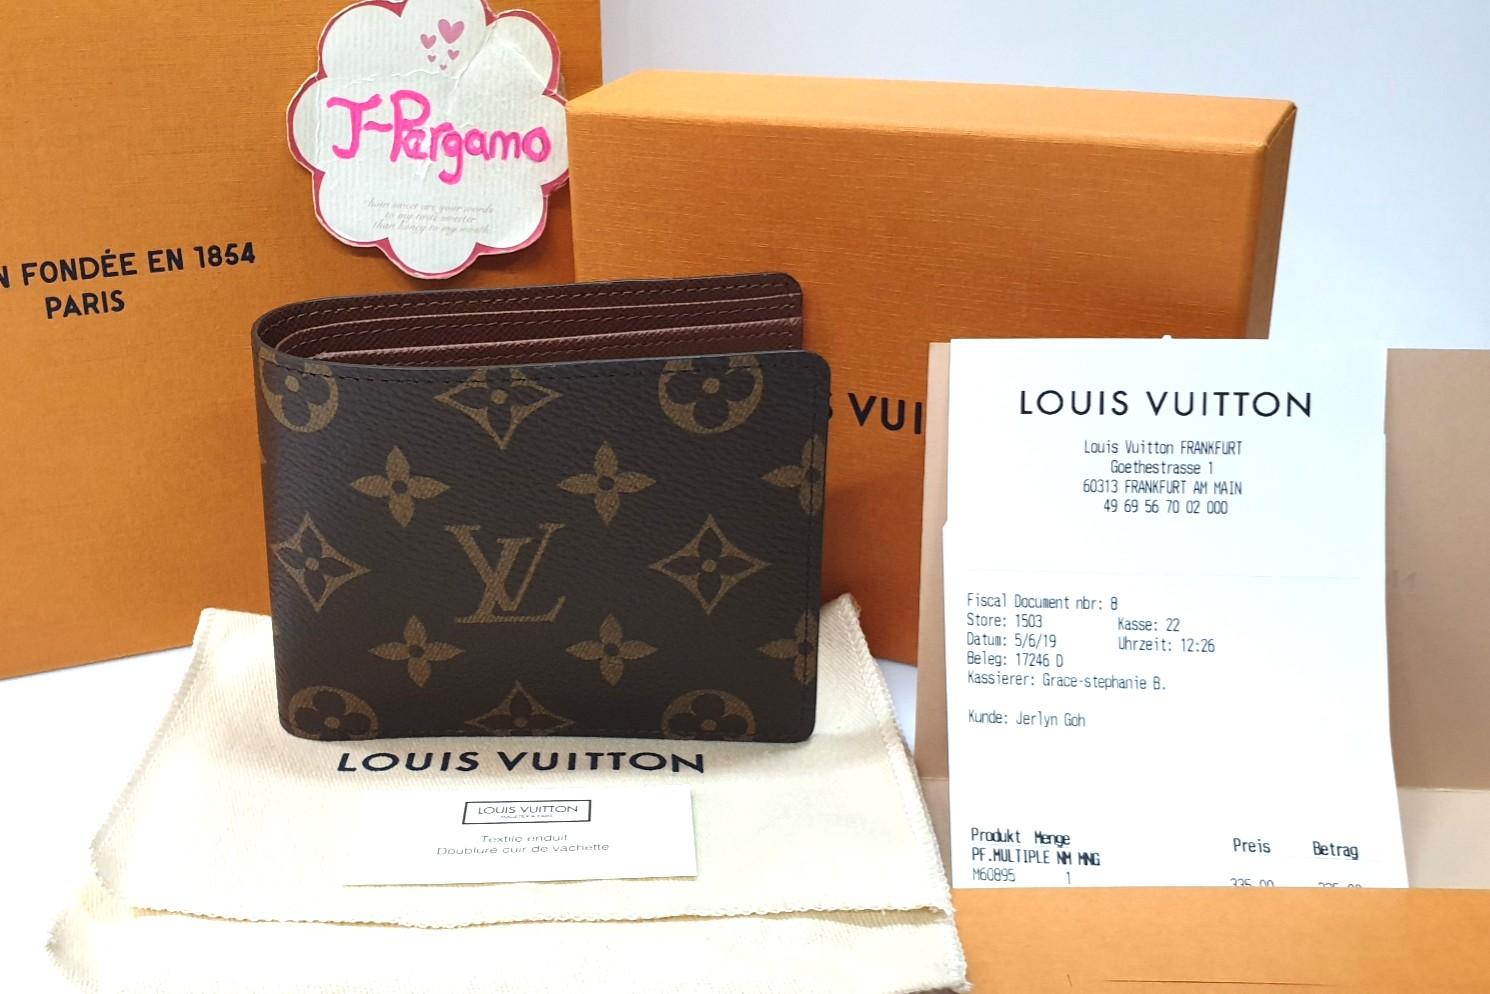 Louis Vuitton Portefeuille Multiple Bifold Wallet Purse M60895 Ra0074